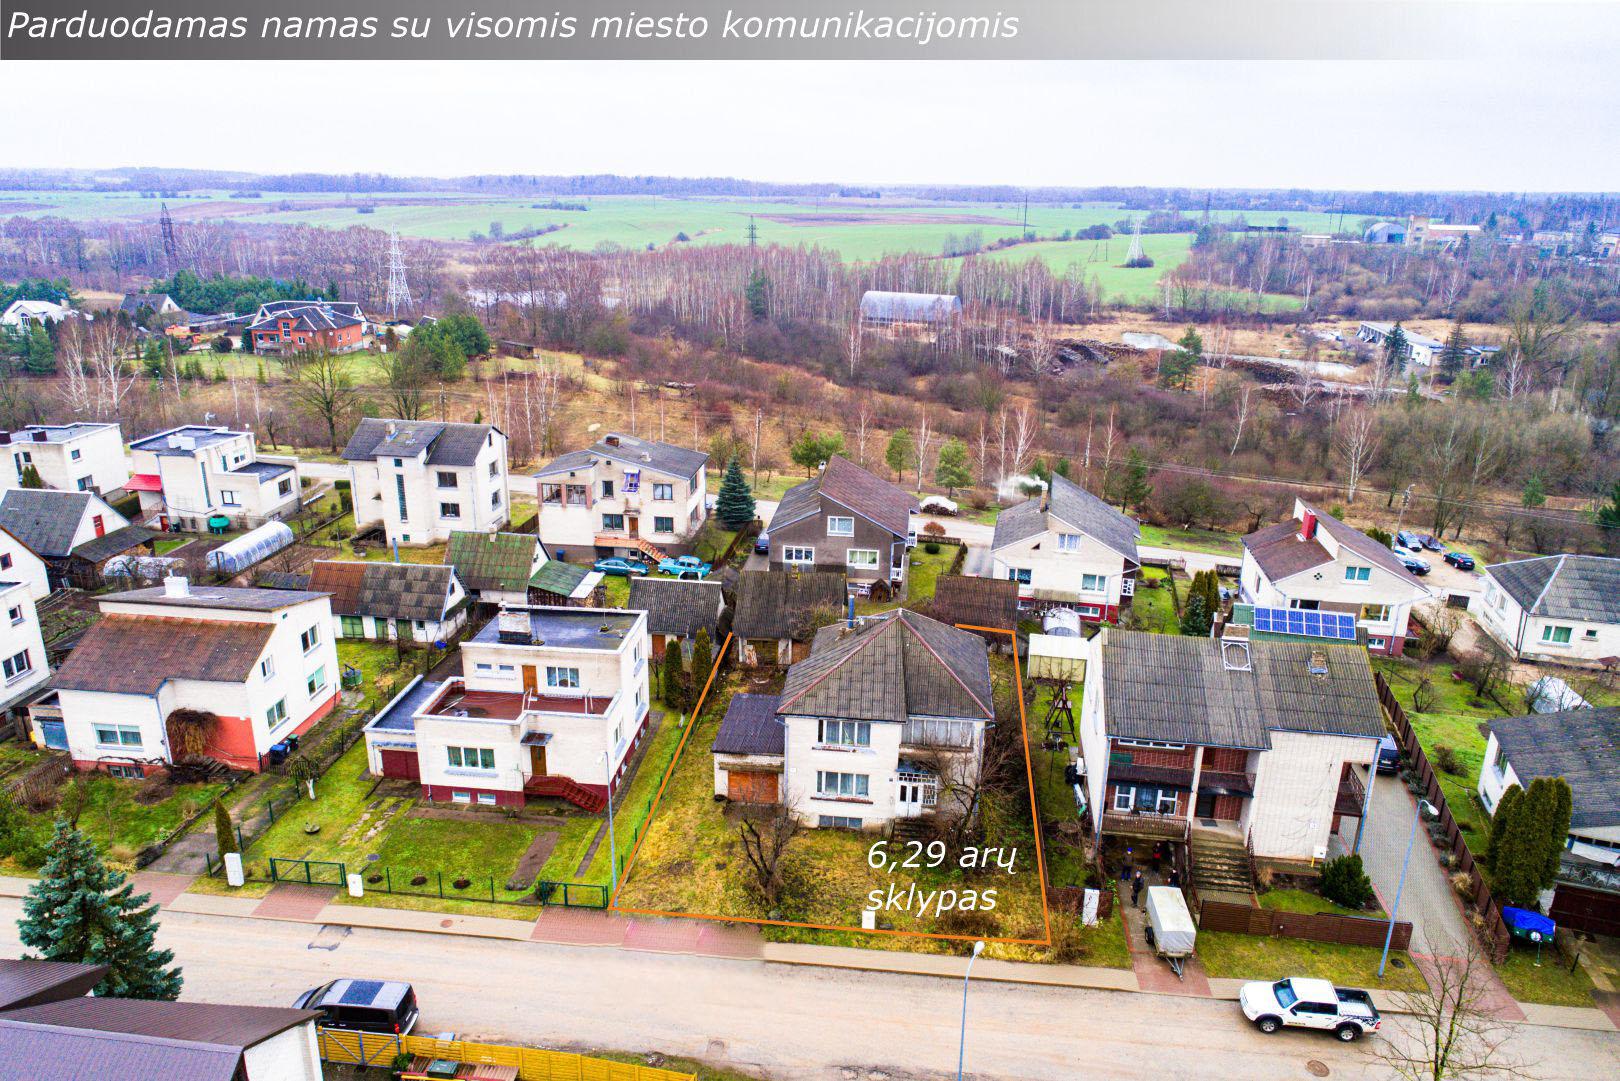 Anykščių mieste, Švyturio g. parduodamas dviejų aukštų gyvenamasis namas su rūsiu ir 6,29 arų namų valdos sklypu